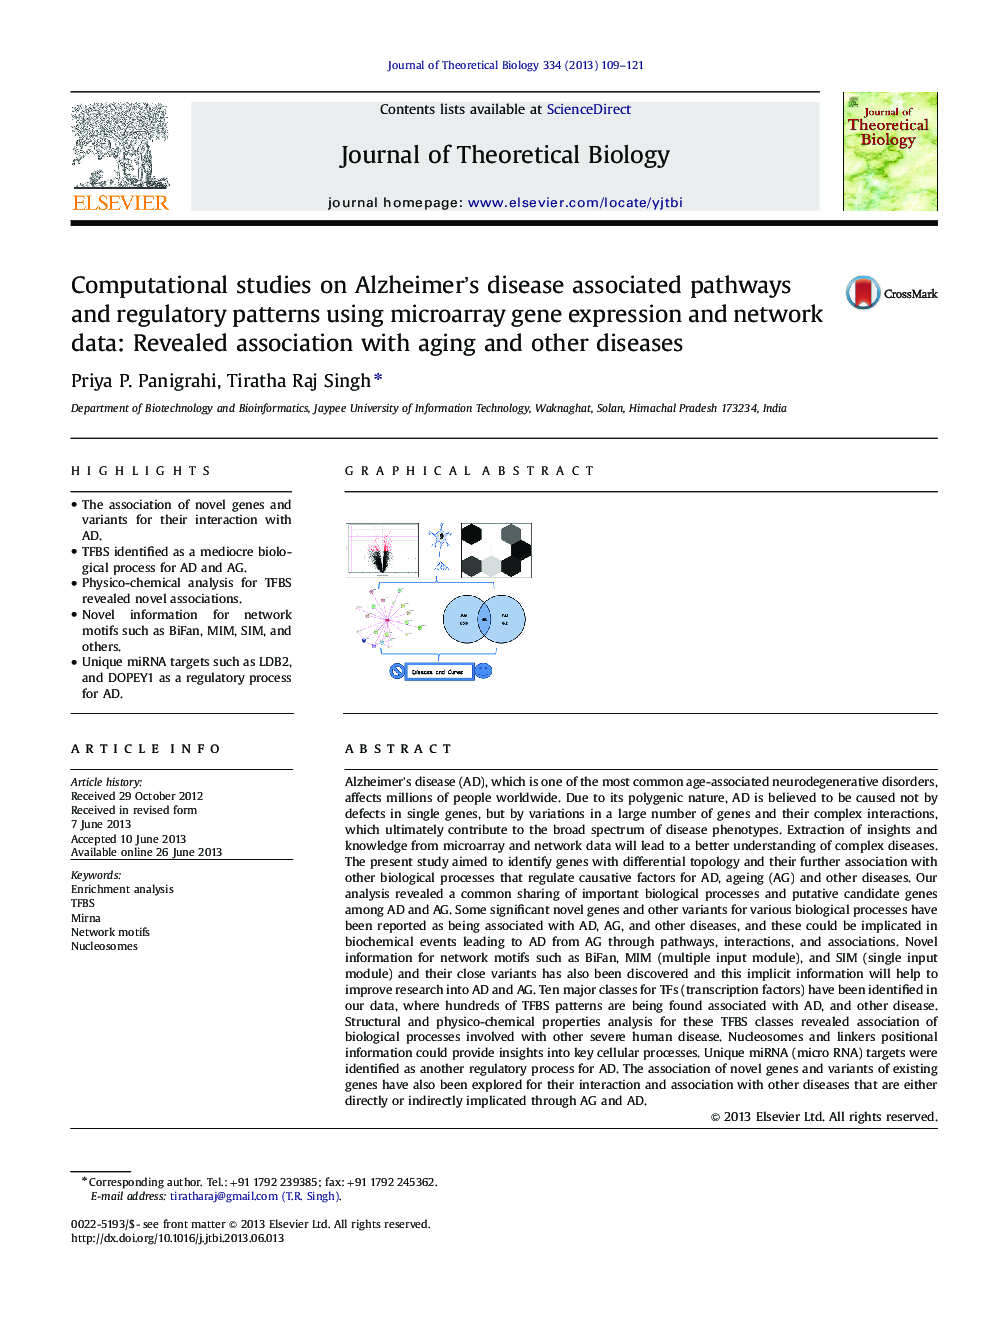 مطالعات محاسباتی بر روی مسیرهای مرتبط با بیماری آلزایمر و الگوهای تنظیم کننده با استفاده از بیان ژن میکروارگیر و داده های شبکه: ارتباط مشخص شده با بیماری های پیری و دیگر بیماری ها 